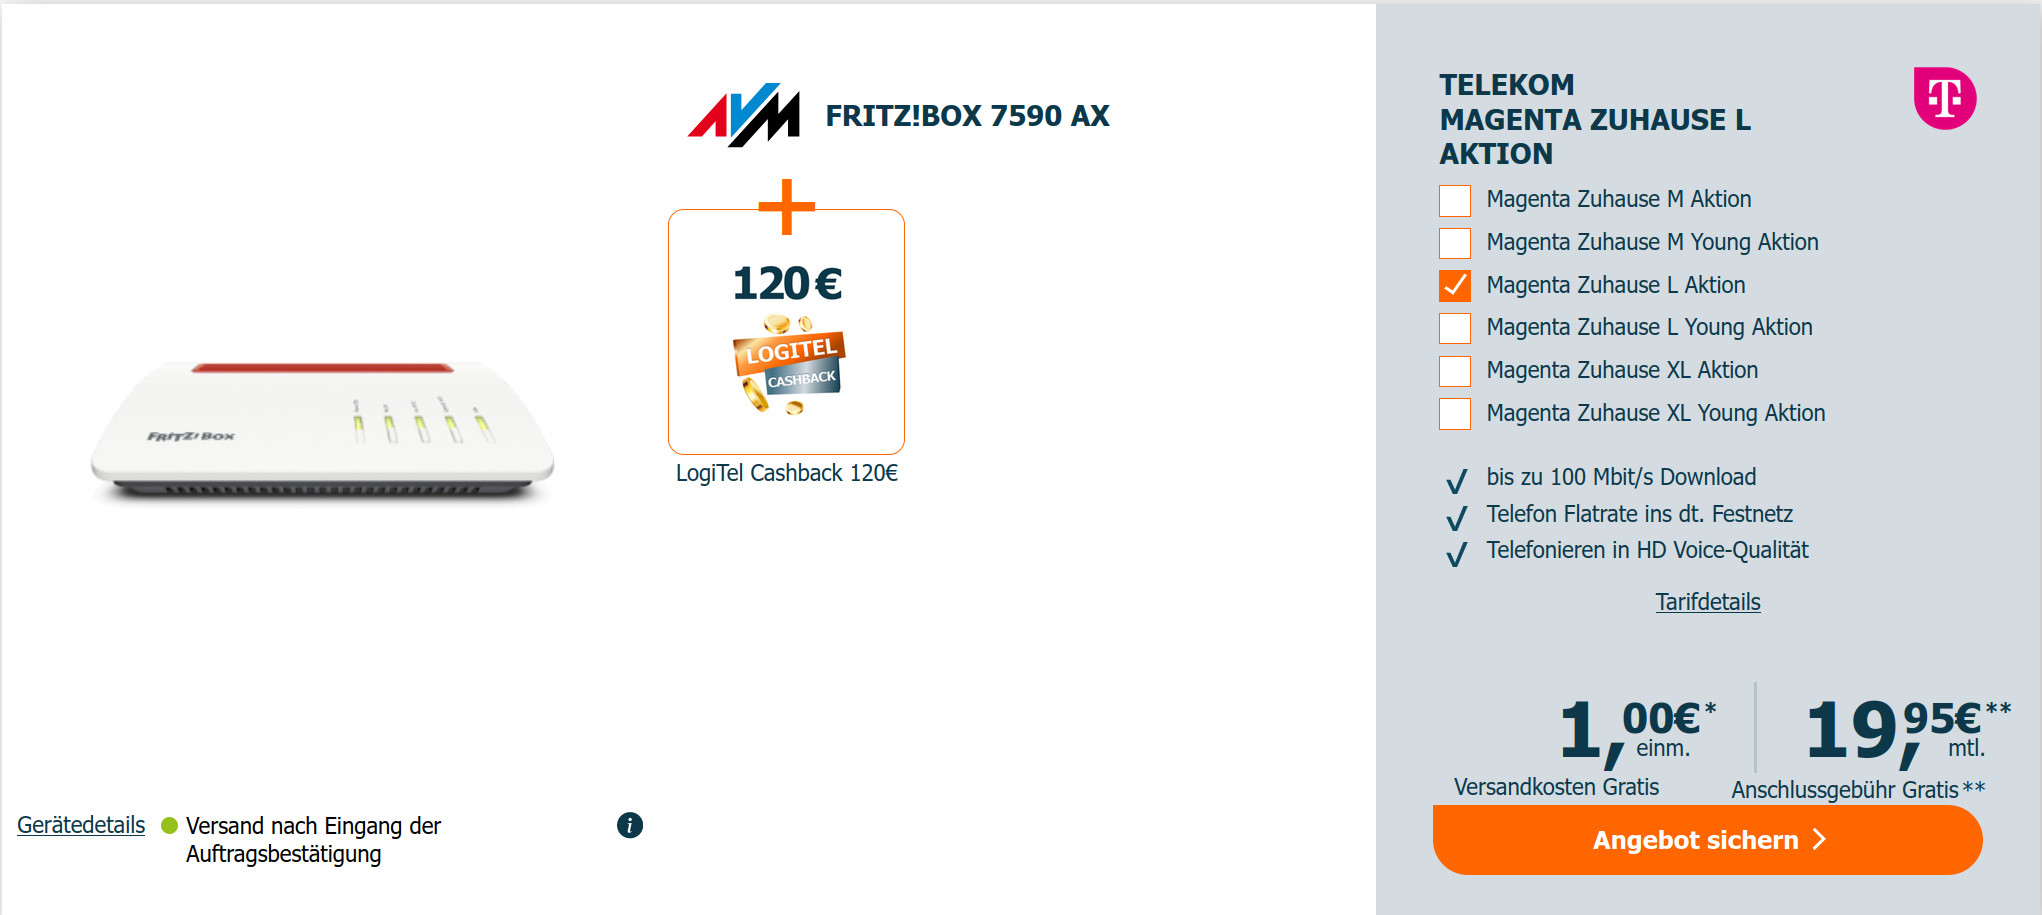 Telekom VDSL Deal: 120 Euro Cashback mit Fritzbox 7590 AX fr mtl. 19,95 Euro